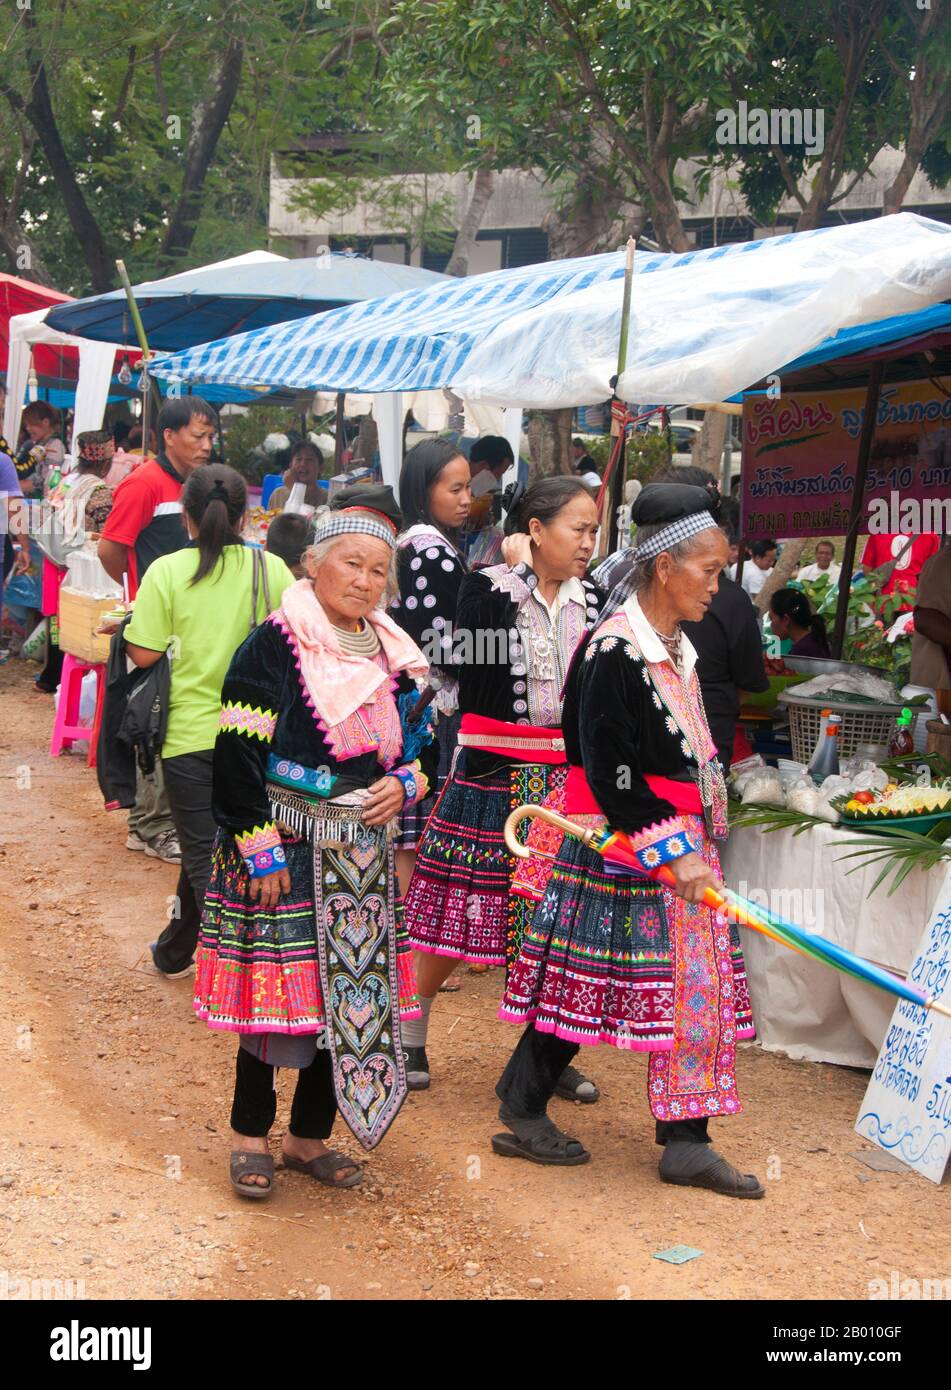 Thailandia: Donne anziane Hmong perusing il mercato a Hmong Capodanno celebrazioni, Chiang mai, Thailandia del Nord. L'anno nuovo di Hmong generalmente si svolge nel mese di novembre o dicembre (tradizionalmente alla fine della stagione di raccolto). Gli Hmong sono un gruppo etnico asiatico delle regioni montane della Cina, del Vietnam, del Laos e della Thailandia. Gli Hmong sono anche uno dei sottogruppi dell'etnia Miao nella Cina meridionale. I gruppi hmong iniziarono una graduale migrazione verso sud nel XVIII secolo a causa dei disordini politici e per trovare terreni più arabili. Foto Stock